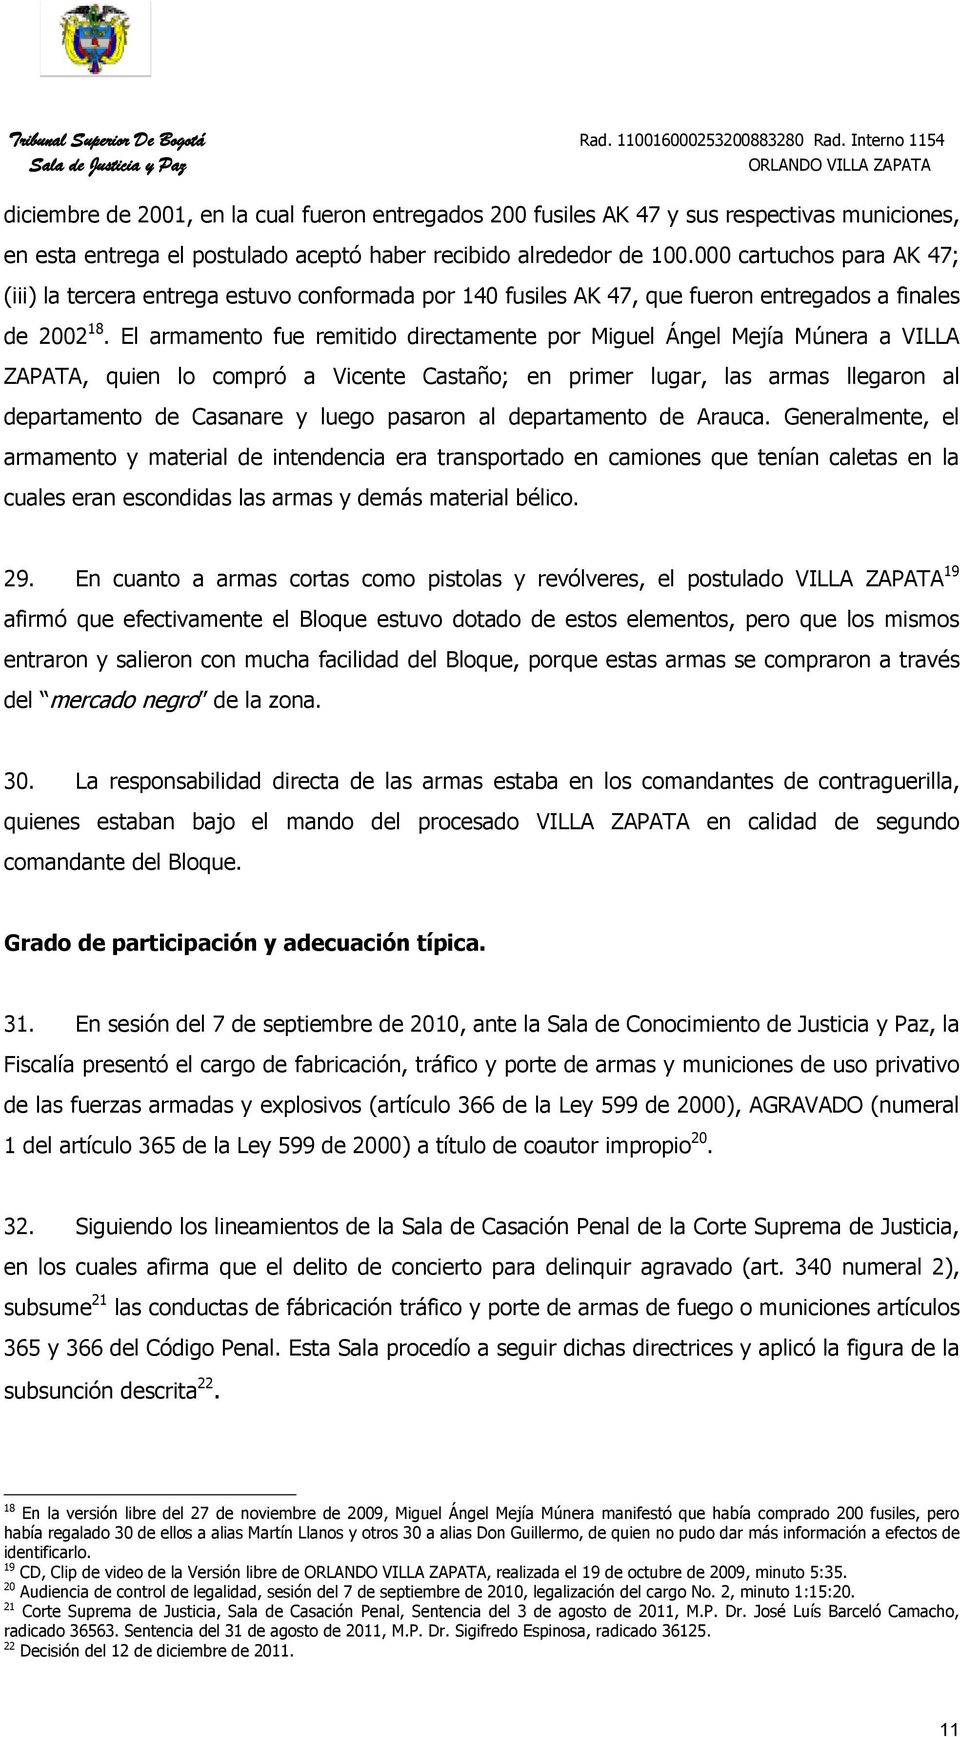 El armamento fue remitido directamente por Miguel Ángel Mejía Múnera a VILLA ZAPATA, quien lo compró a Vicente Castaño; en primer lugar, las armas llegaron al departamento de Casanare y luego pasaron